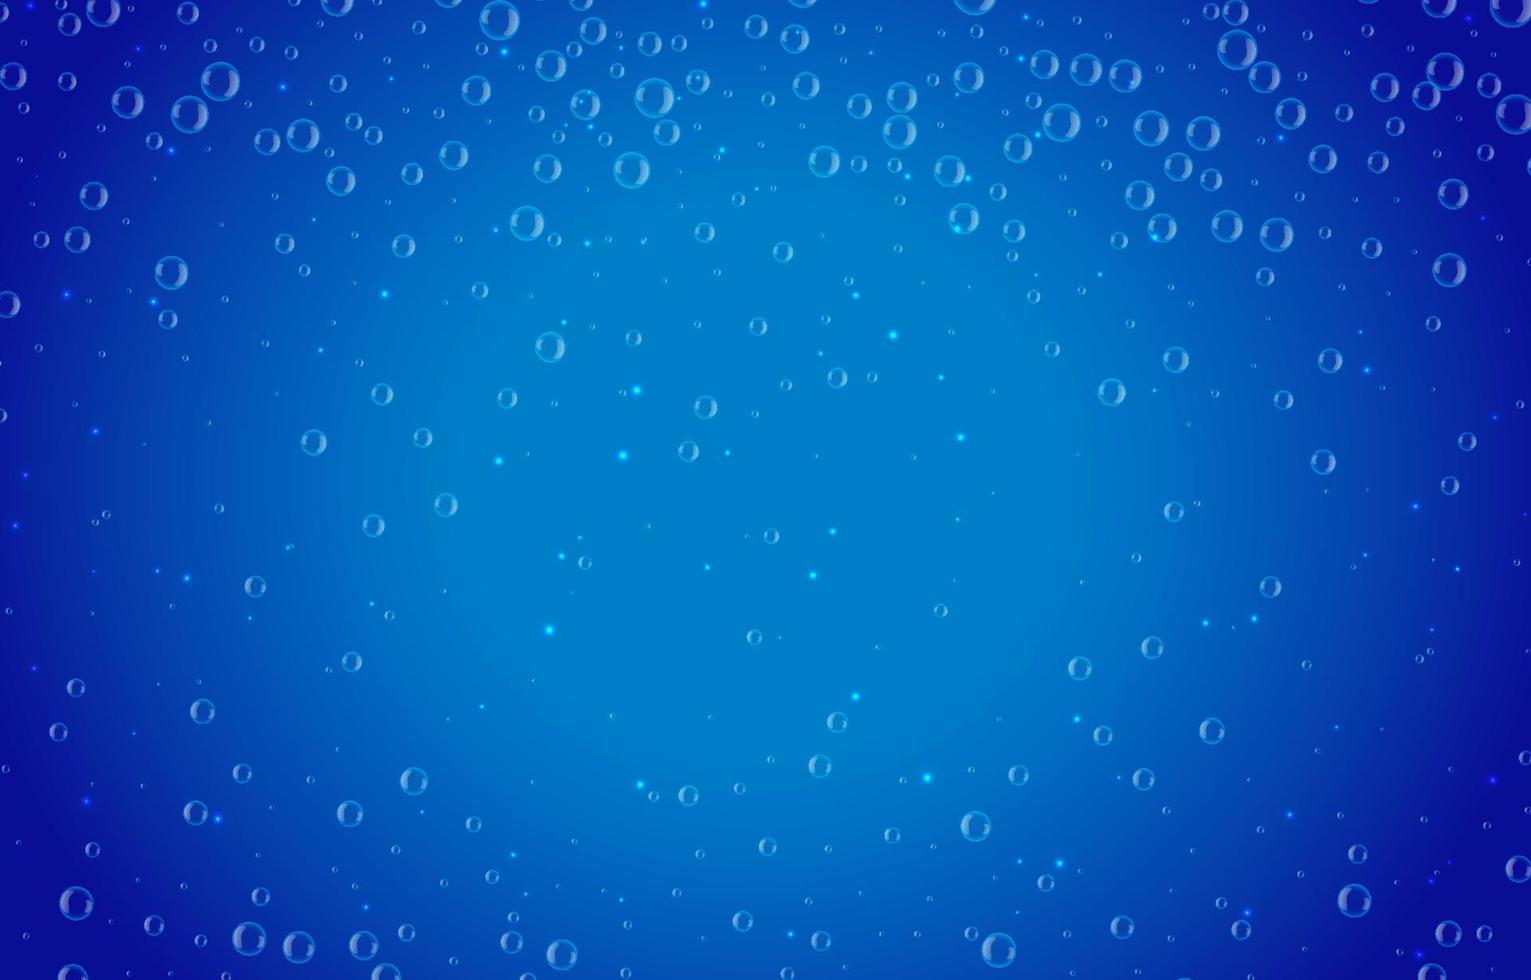 bubbla i vatten på blå bakgrund vektorillustration vektor